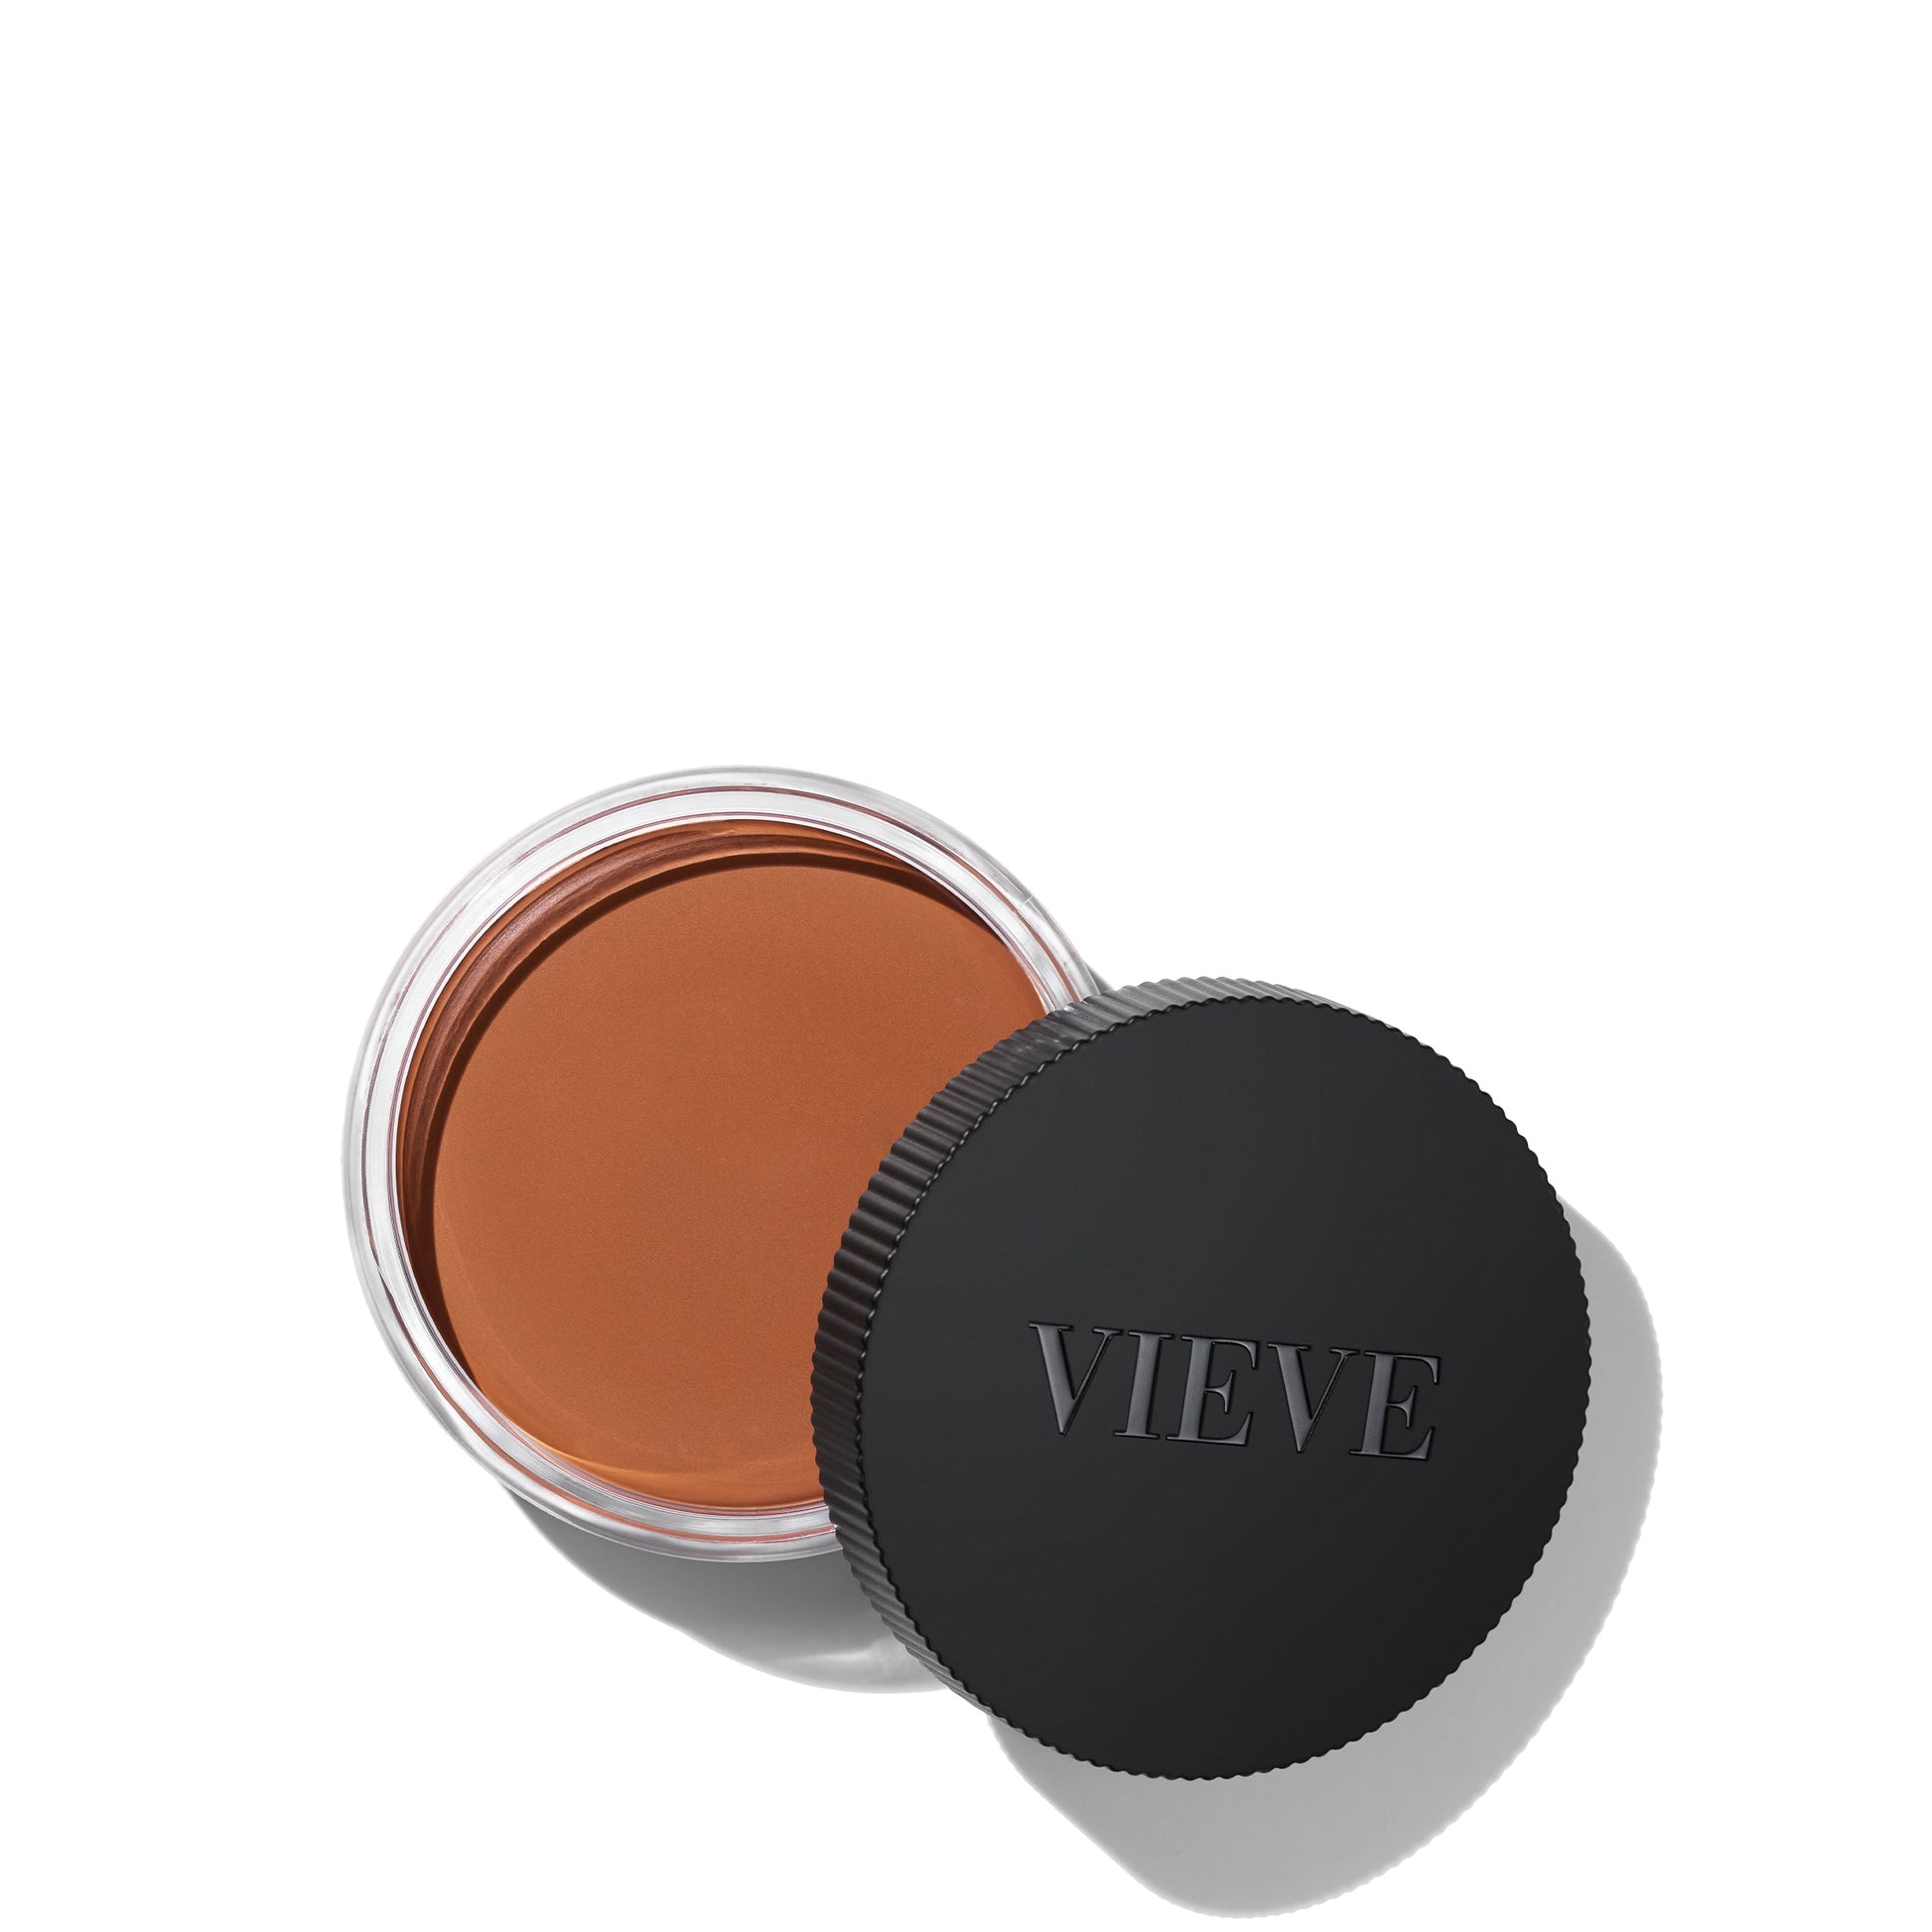 VIEVE Modern Radiance Cream Bronzer - Multi - One Size